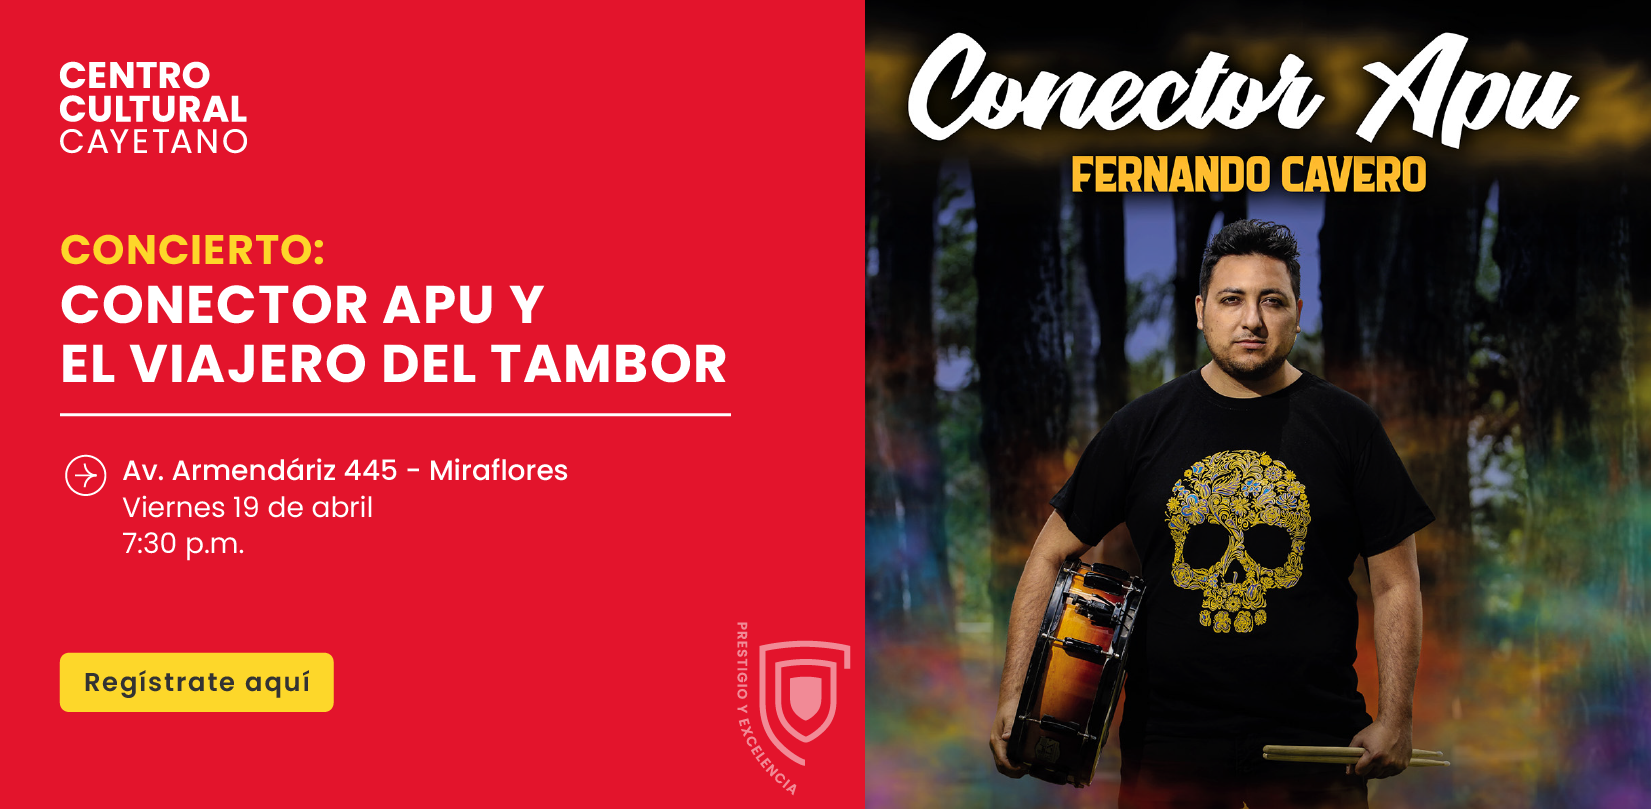 Concierto_Conector_Apu_y_el_viajero_del_tambor_BANNER_1_copia